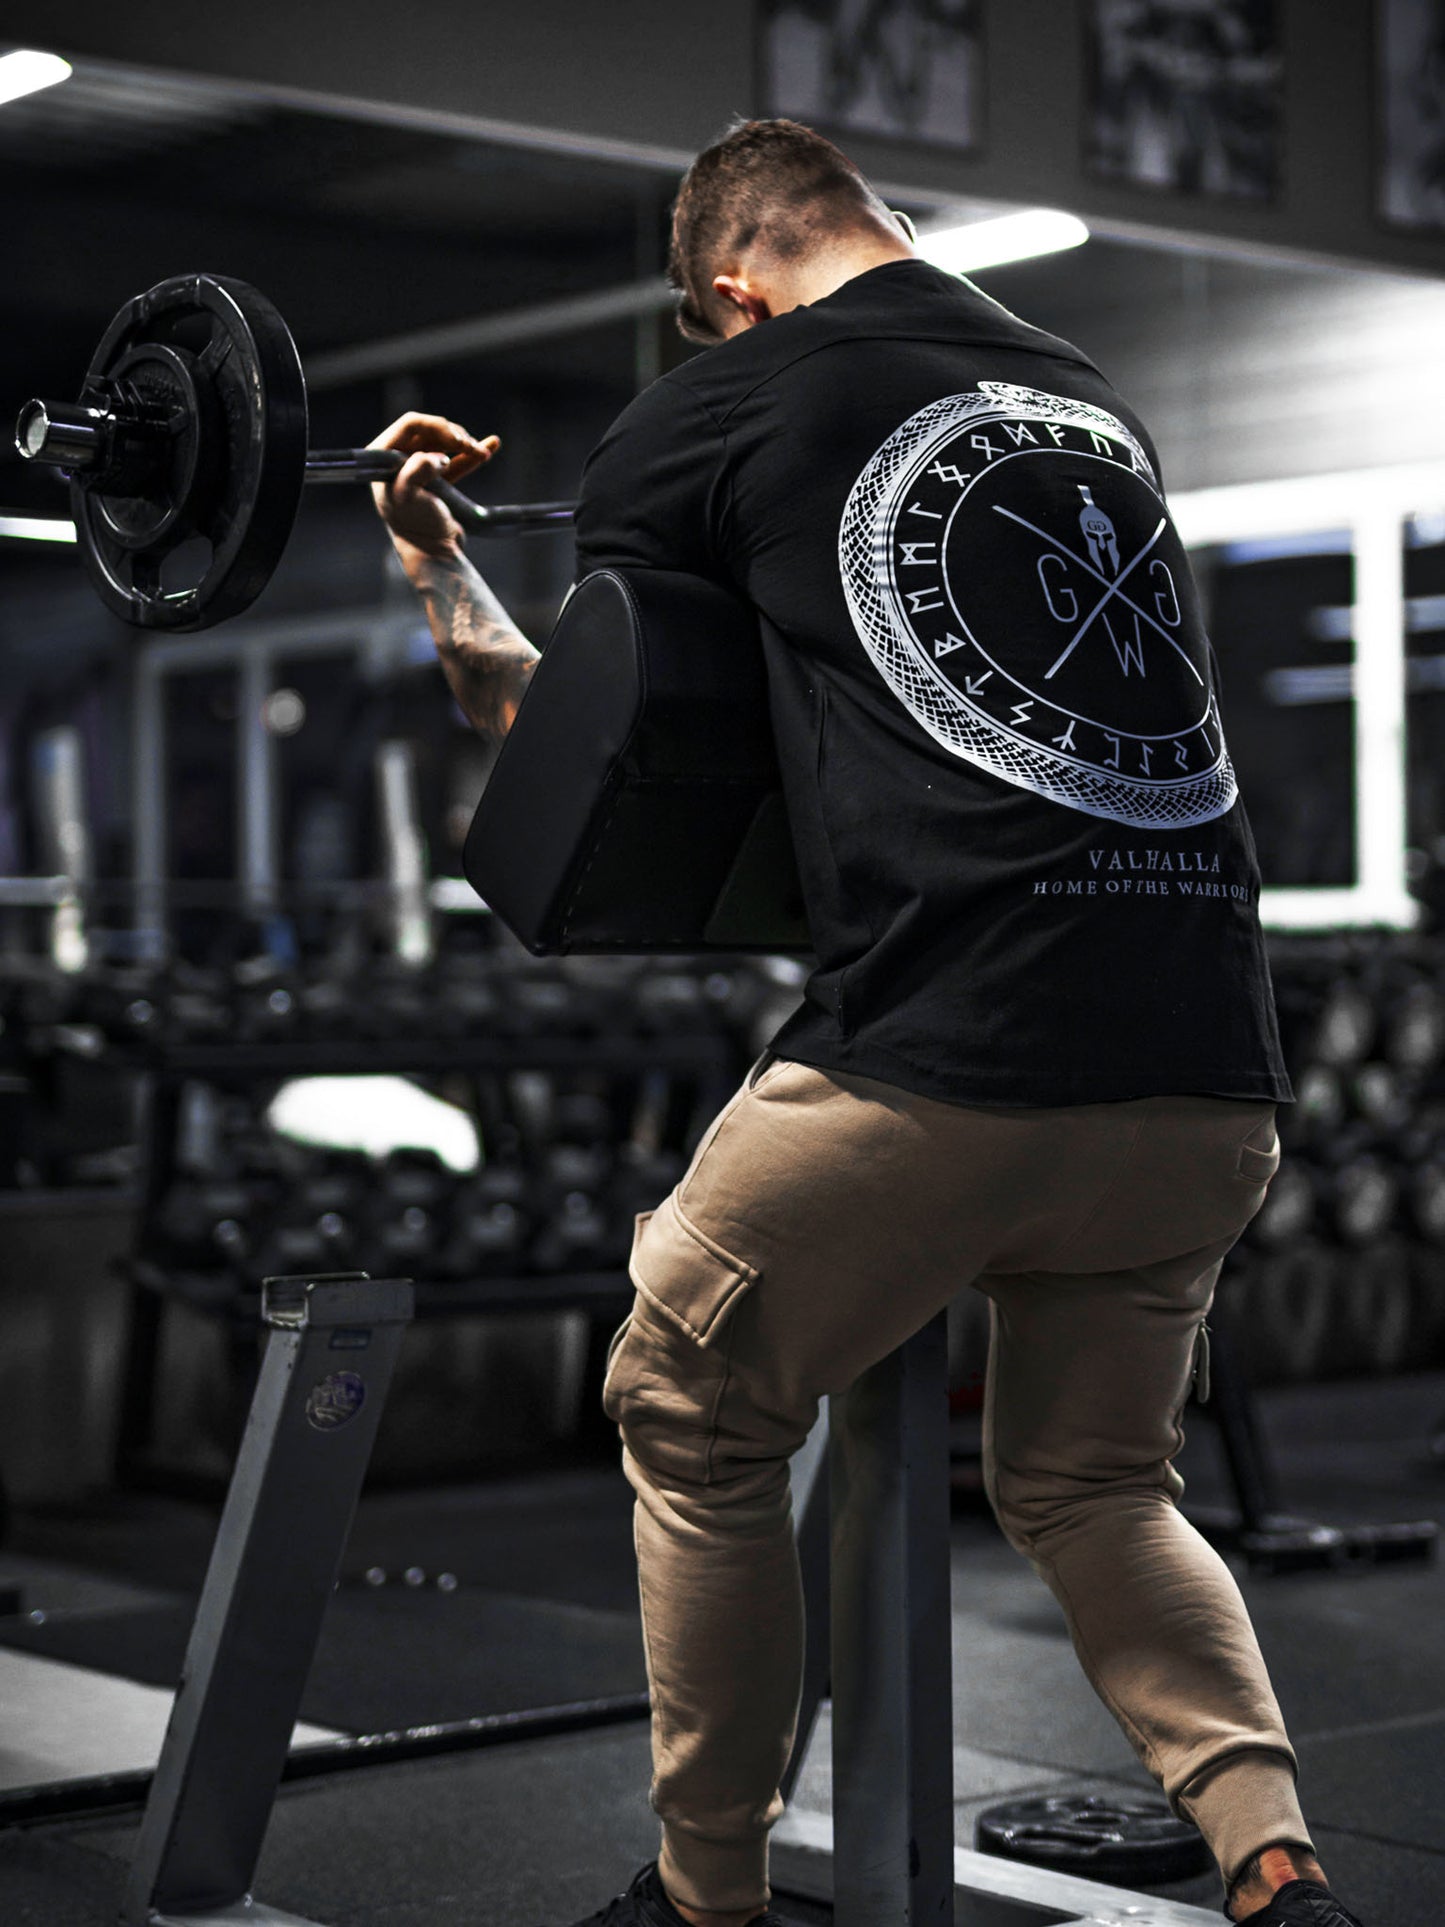 Bequemes und stilvolles Valhalla T-Shirt von Gym Generation, ein Zeichen von Mut und Kampfgeist.